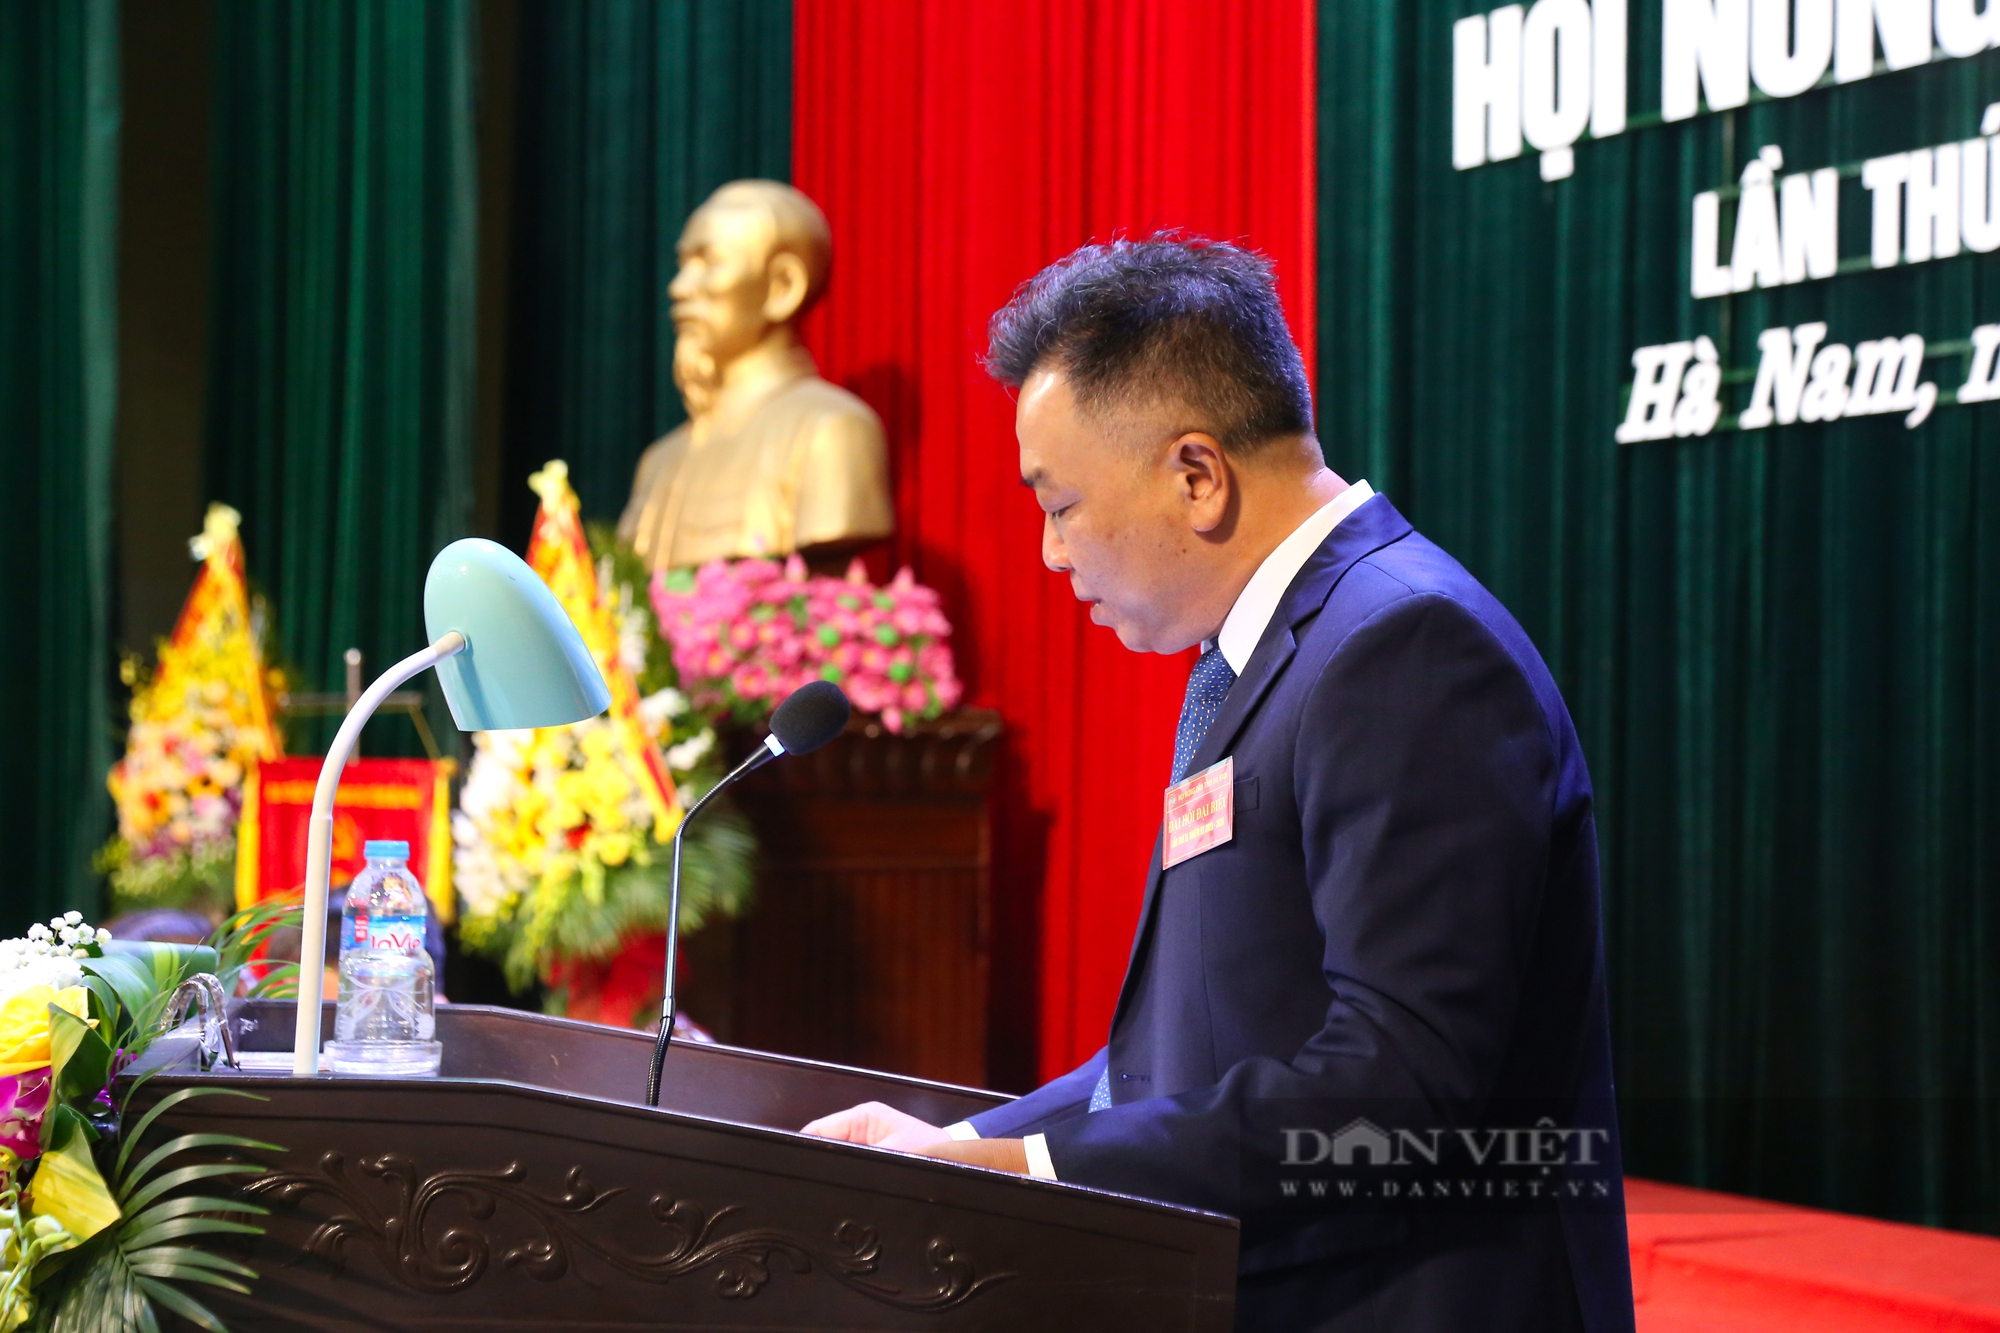 Phó Chủ tịch Hội ND Việt Nam và Bí thư Tỉnh ủy Hà Nam dự, chỉ đạo Đại hội Hội Nông dân tỉnh Hà Nam - Ảnh 3.